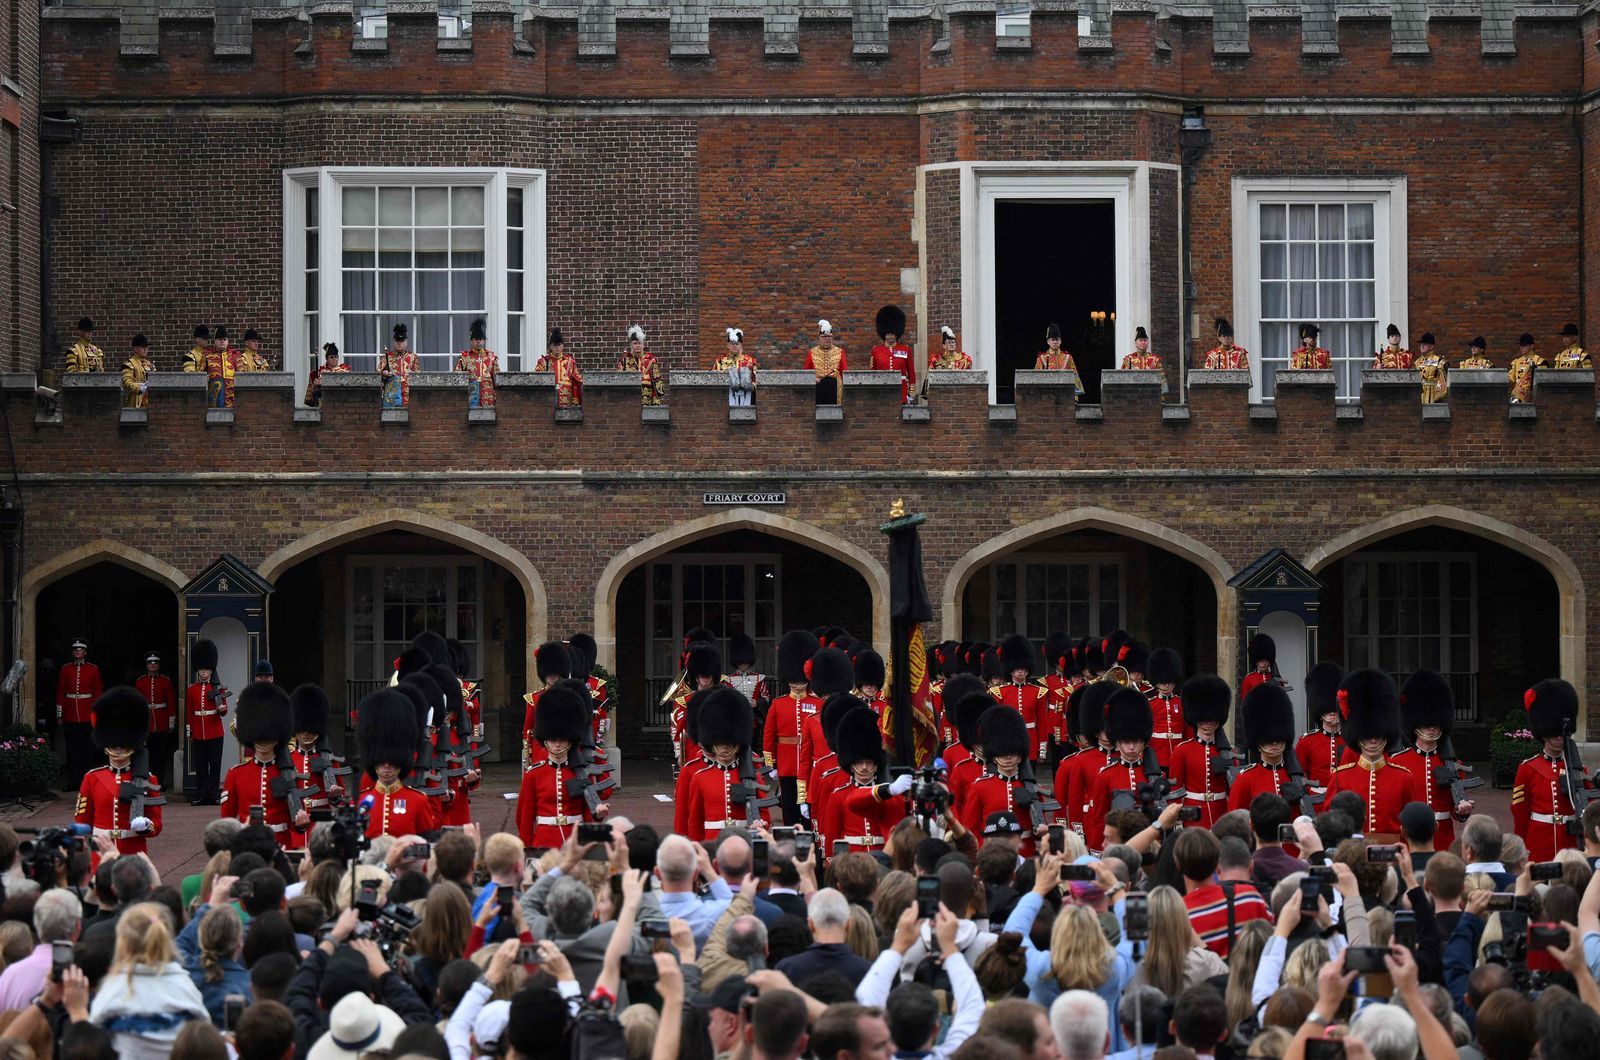 تجمع الحشود أثناء قراءة كبير الرسل في بريطانيا ديفيد وايت البيان الرسمي لتنصيب تشارلز الثالث ملكا من شرفة بقصر سانت جيمس في لندن- 10 سبتمبر 2022 - AFP